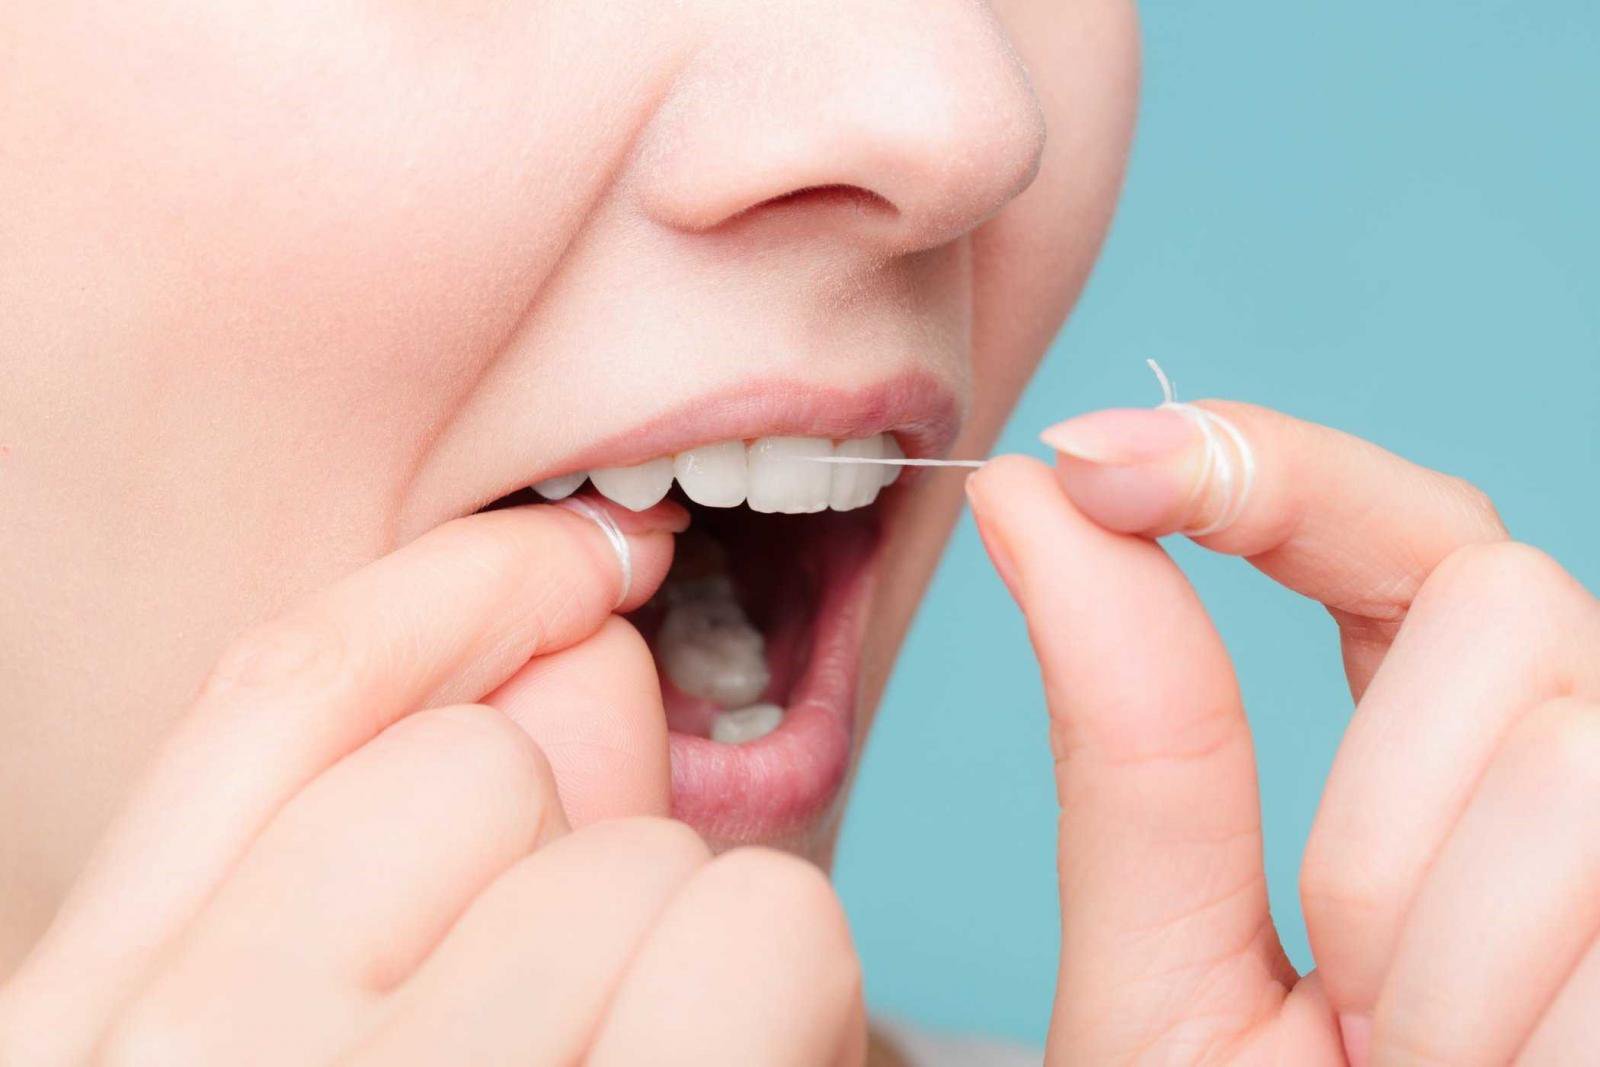 Chuyên gia cảnh báo những tác hại khôn lường khi dùng tăm xỉa răng: Nhẹ thì rách mô nướu, nặng thì gây nhiễm trùng, phá vỡ thủ thuật nha khoa - Ảnh 4.